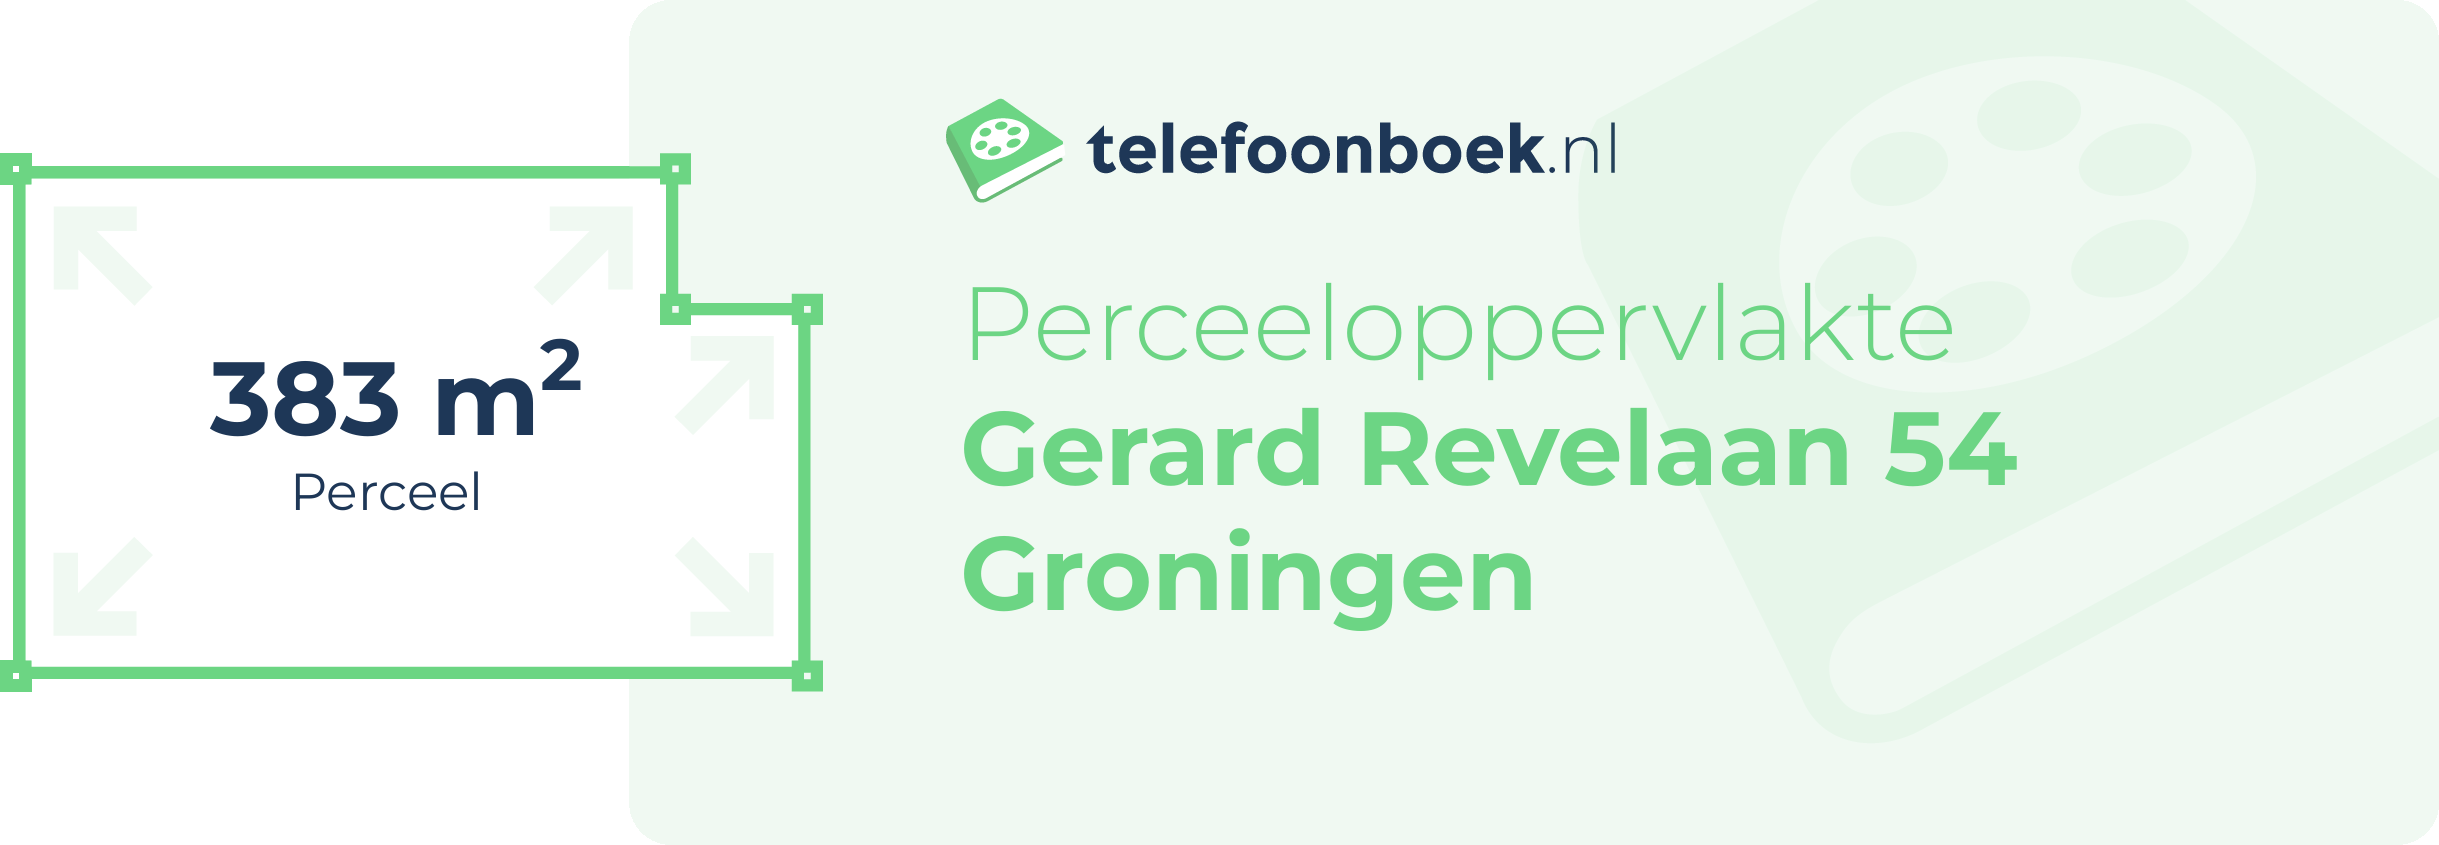 Perceeloppervlakte Gerard Revelaan 54 Groningen